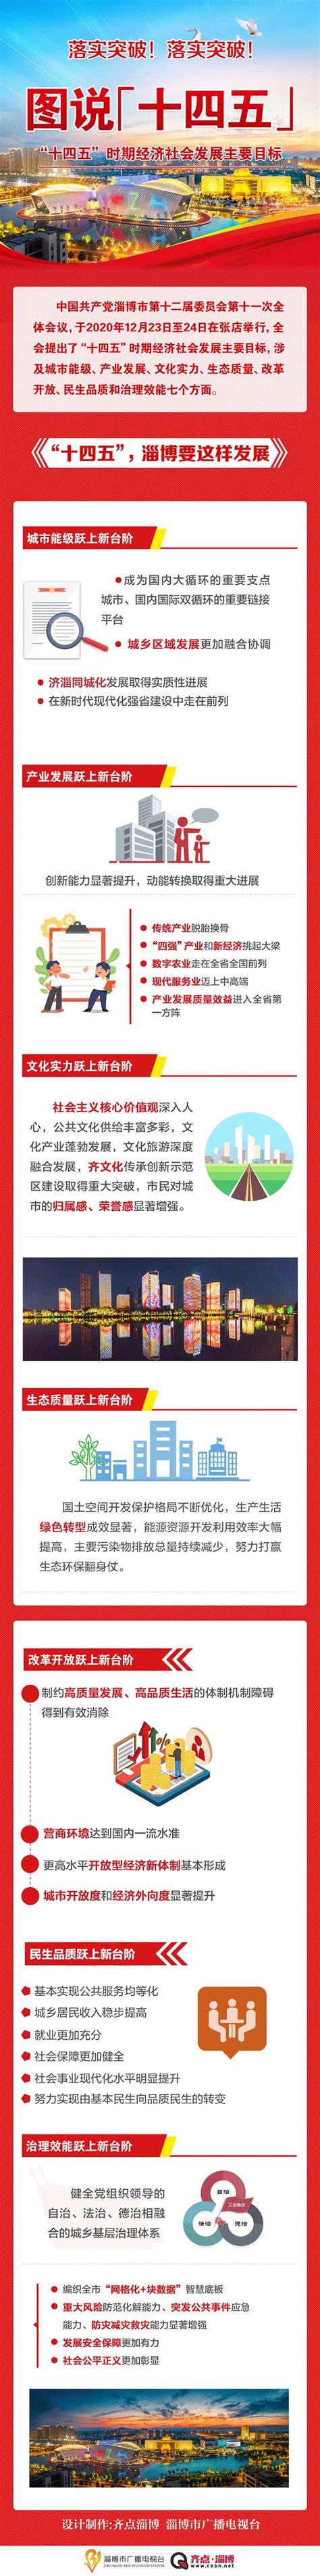 淄博旅游景点排名前十 淄博排名前十的旅游景点_知秀网